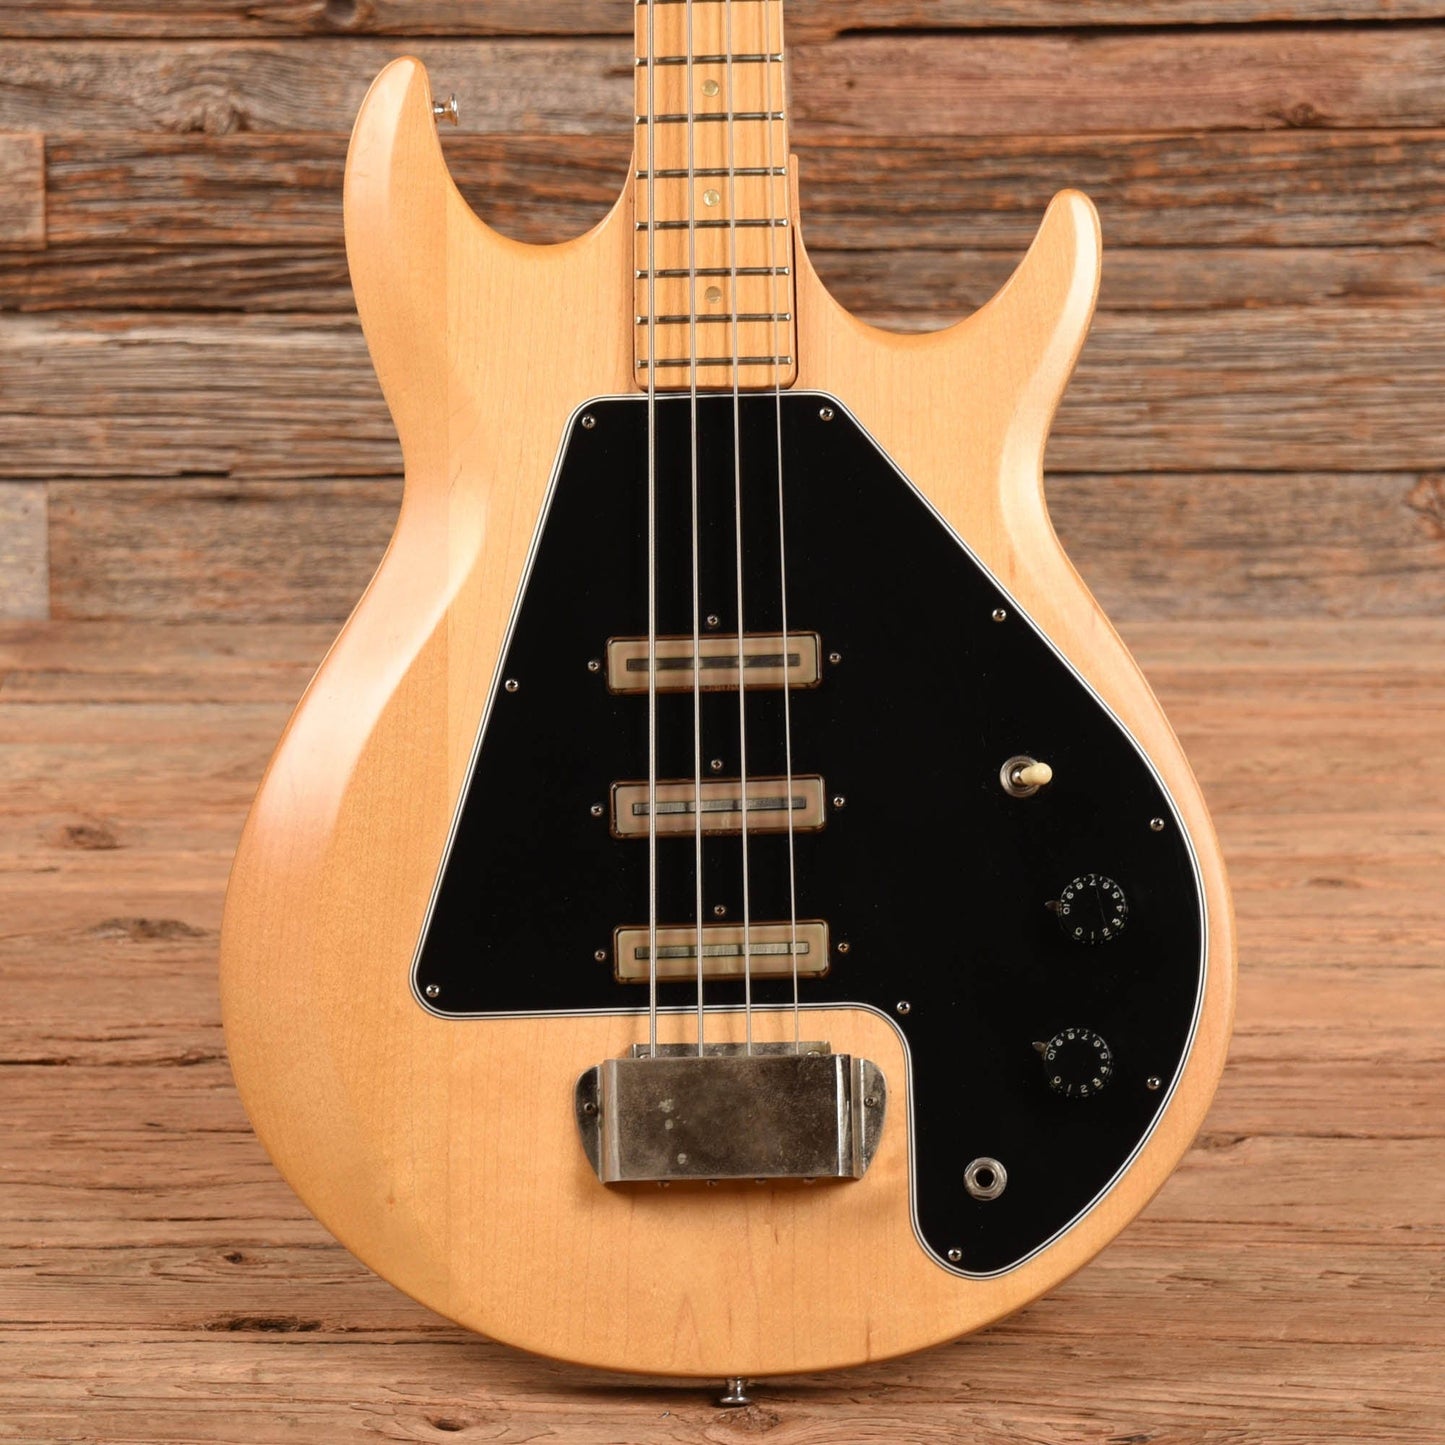 Gibson Grabber G3 Natural 1976 Bass Guitars / 4-String